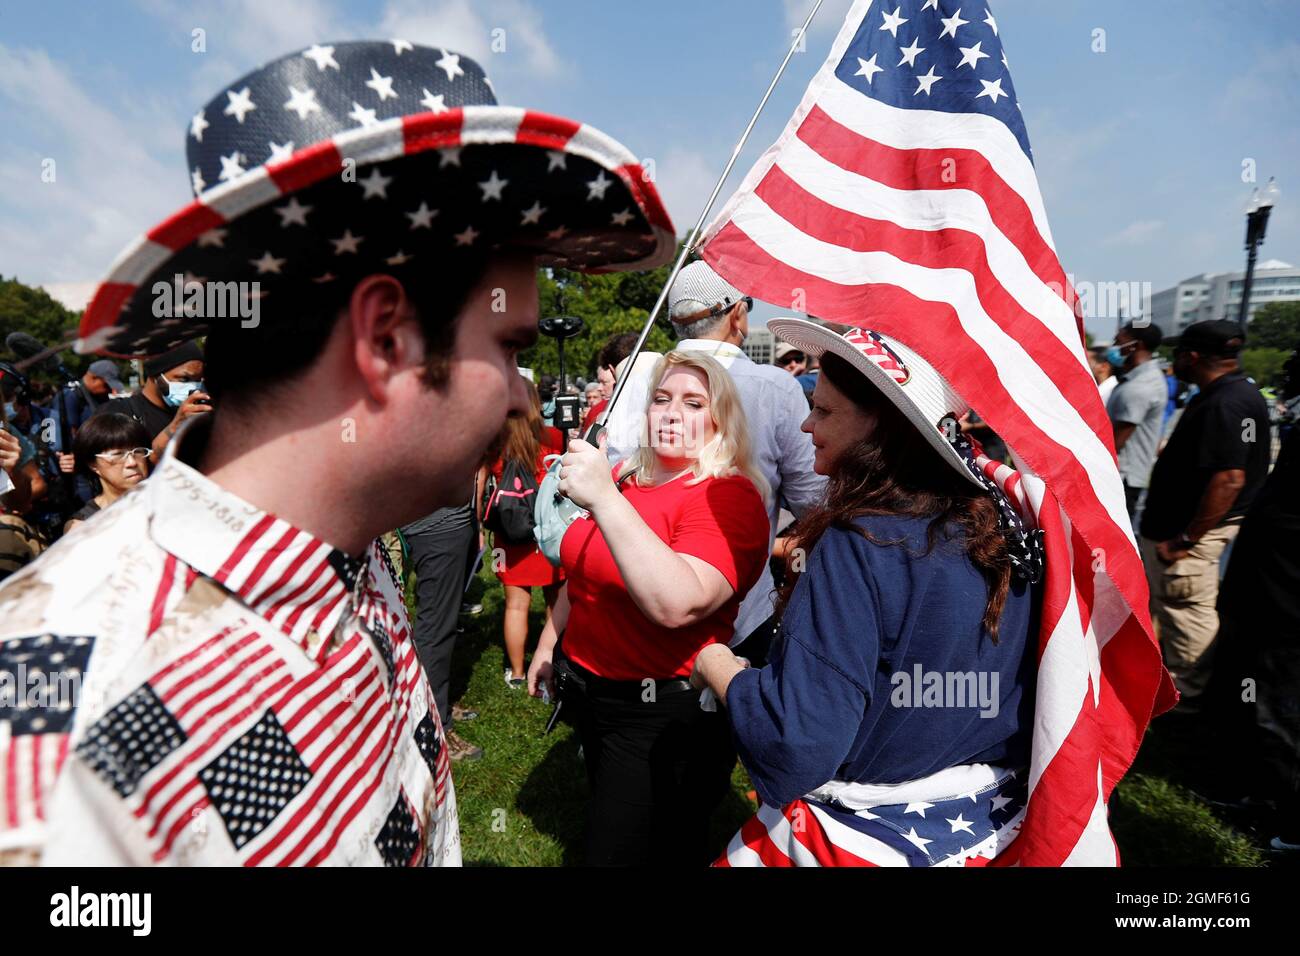 Diane, de New York, du groupe « look Ahead America », détient un drapeau américain alors qu'elle proteste au nom des accusés poursuivis lors de l'attaque du 6 janvier sur le Capitole, à Washington, États-Unis, le 18 septembre 2021. REUTERS/Jim Bourg Banque D'Images